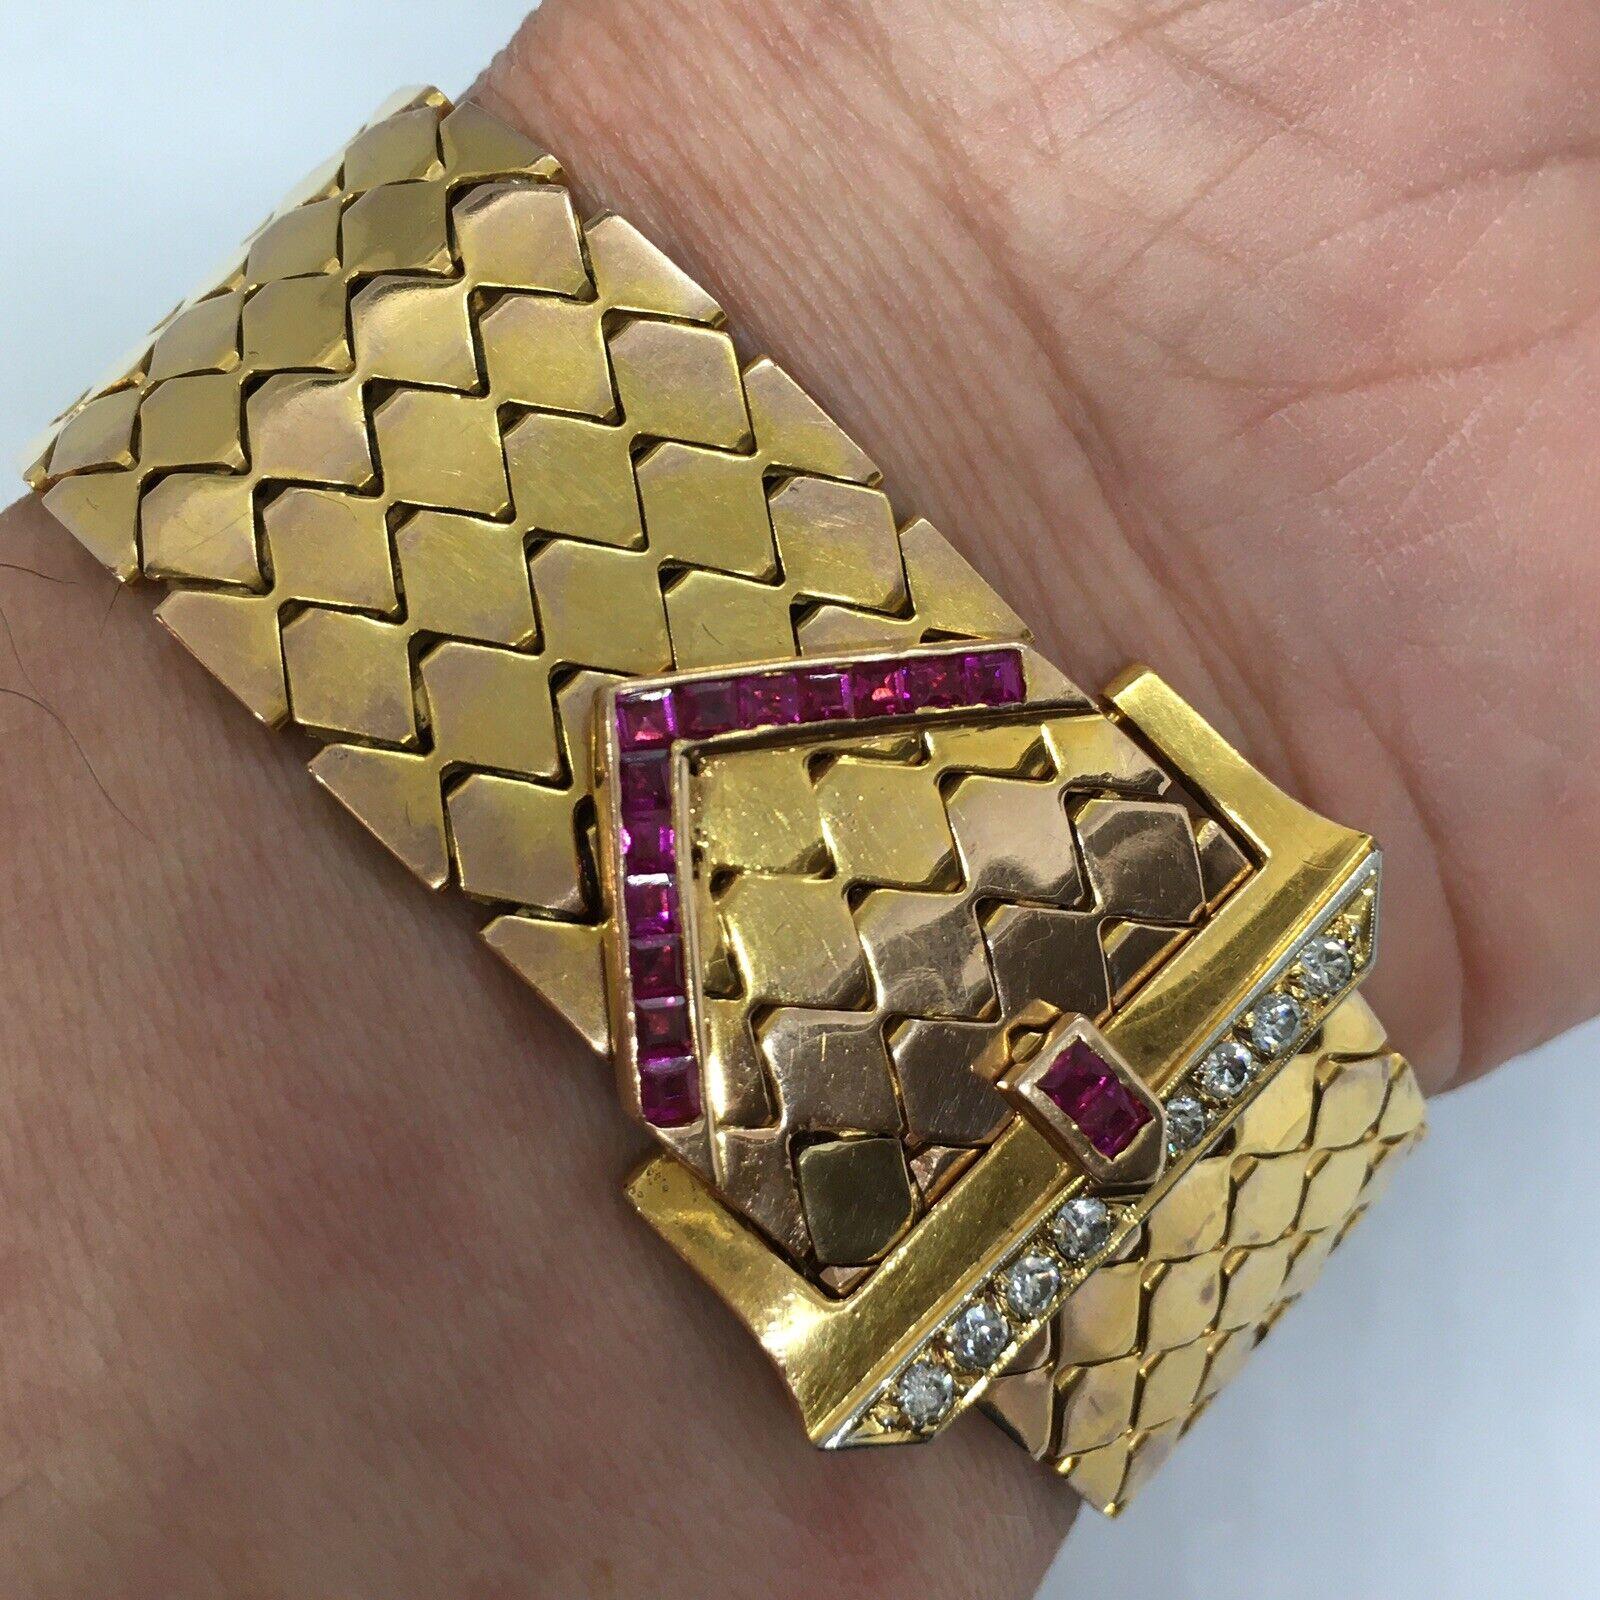 Retro Diamond Ruby Buckle Armband 14K American Gold 1940er Jahre

66,5 Gramm
Markiert und getestet 14K
23 mm breit
8,75 Zoll lang
15 Stück quadratisch geschliffener Rubin (nicht getestet), die Verwendung von Rubin ist auf Retro üblich, ca. 1940er